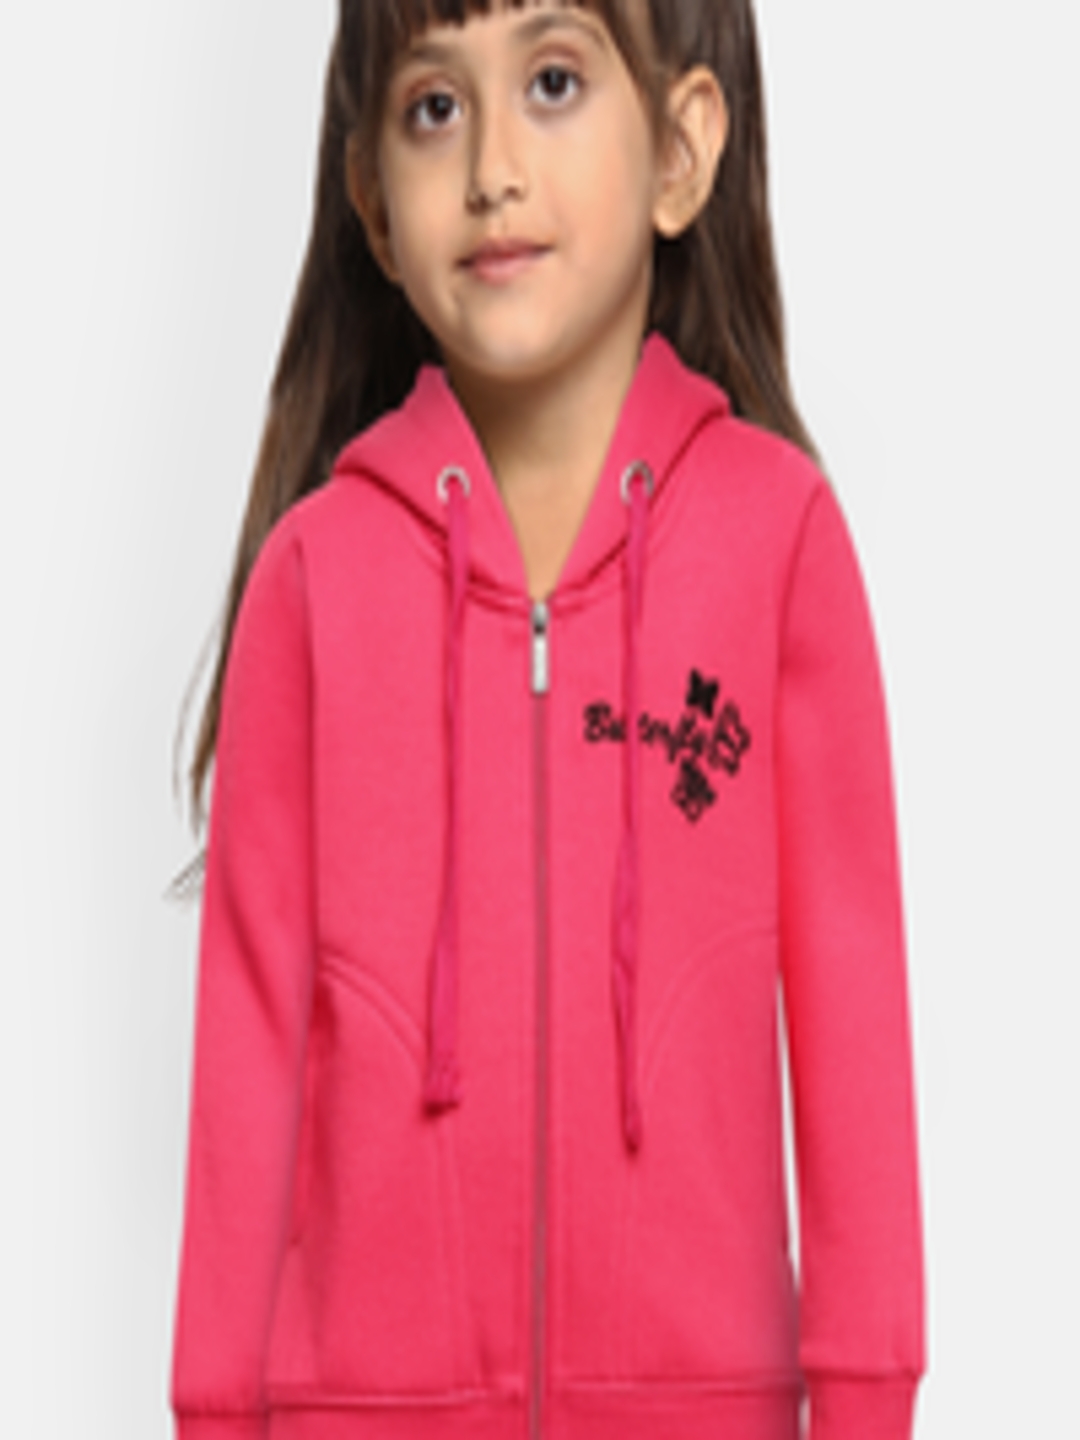 Buy ADBUCKS Girls Pink Hooded Sweatshirt - Sweatshirts for Girls ...